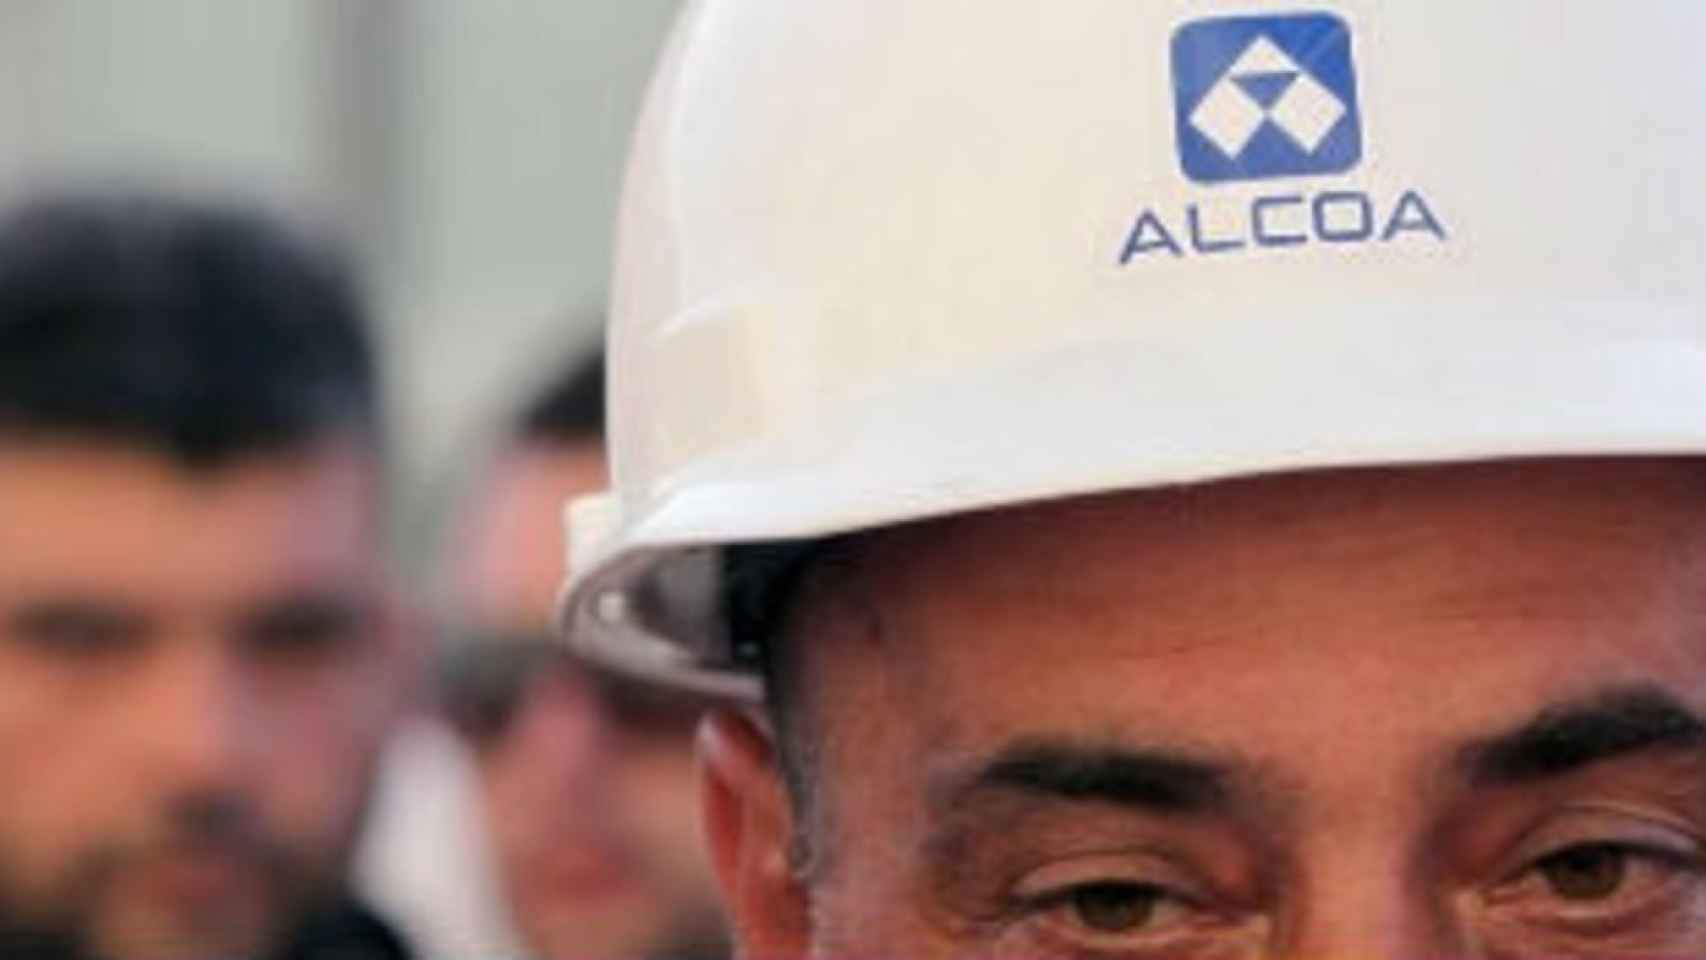 Gobierno, Xunta, Principado y sindicatos se reúnen con Alcoa para abordar el futuro de las plantas